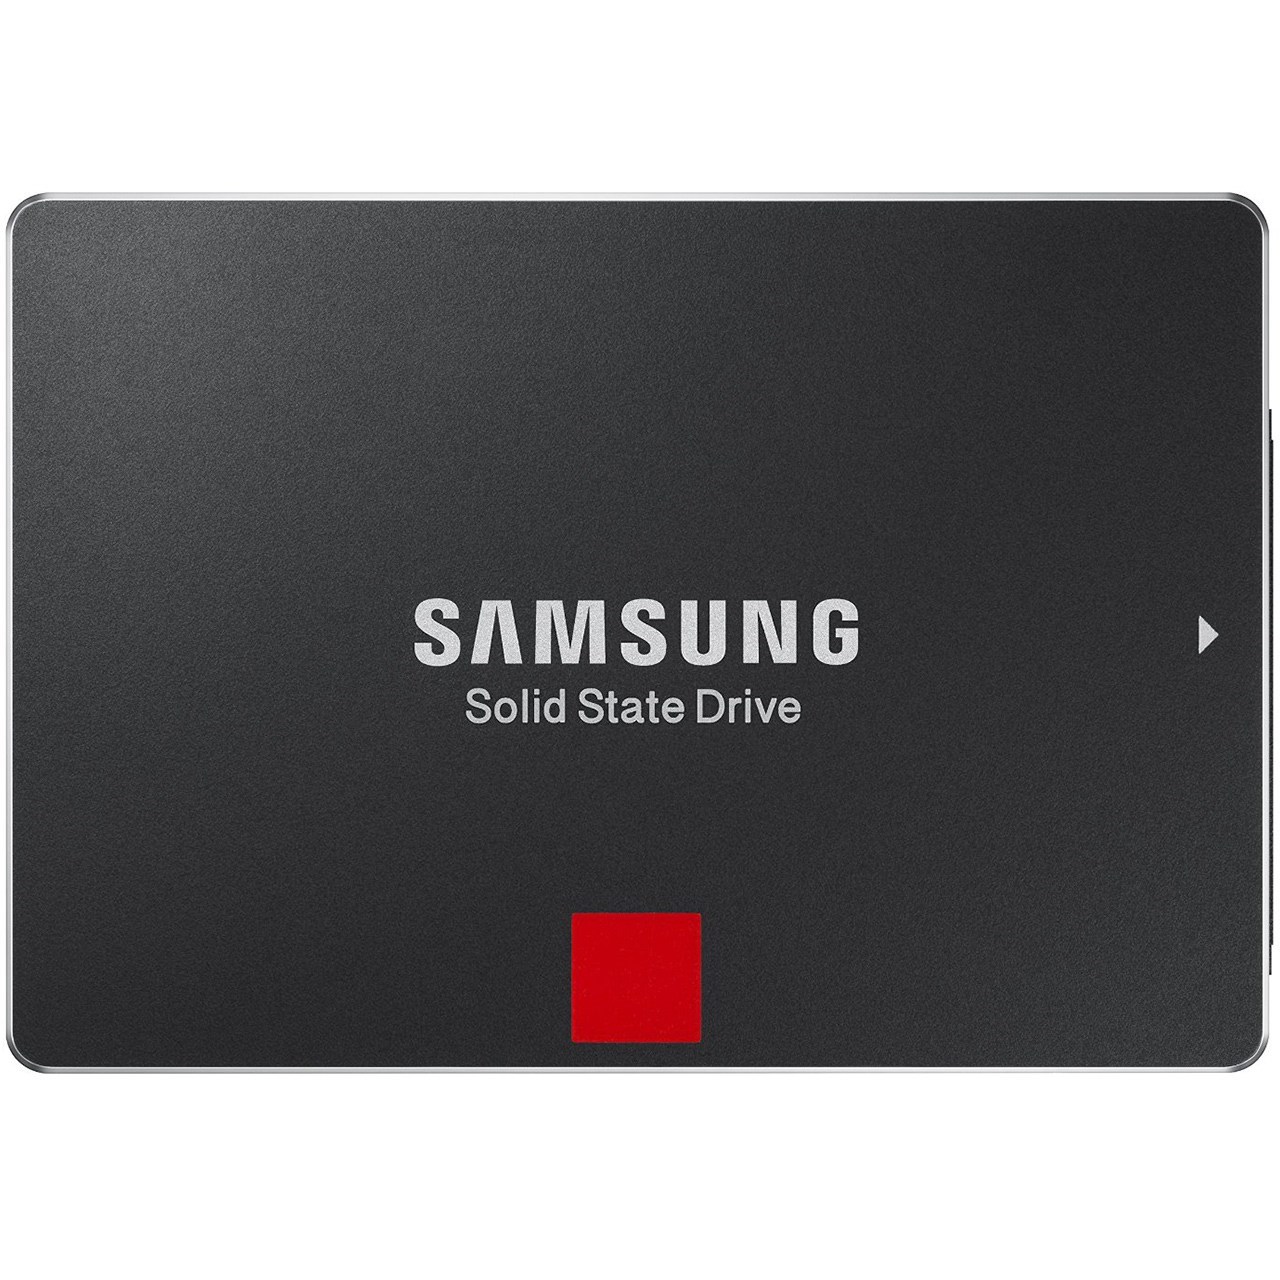 حافظه SSD سامسونگ مدل 850 پرو ظرفیت 1 ترابایت